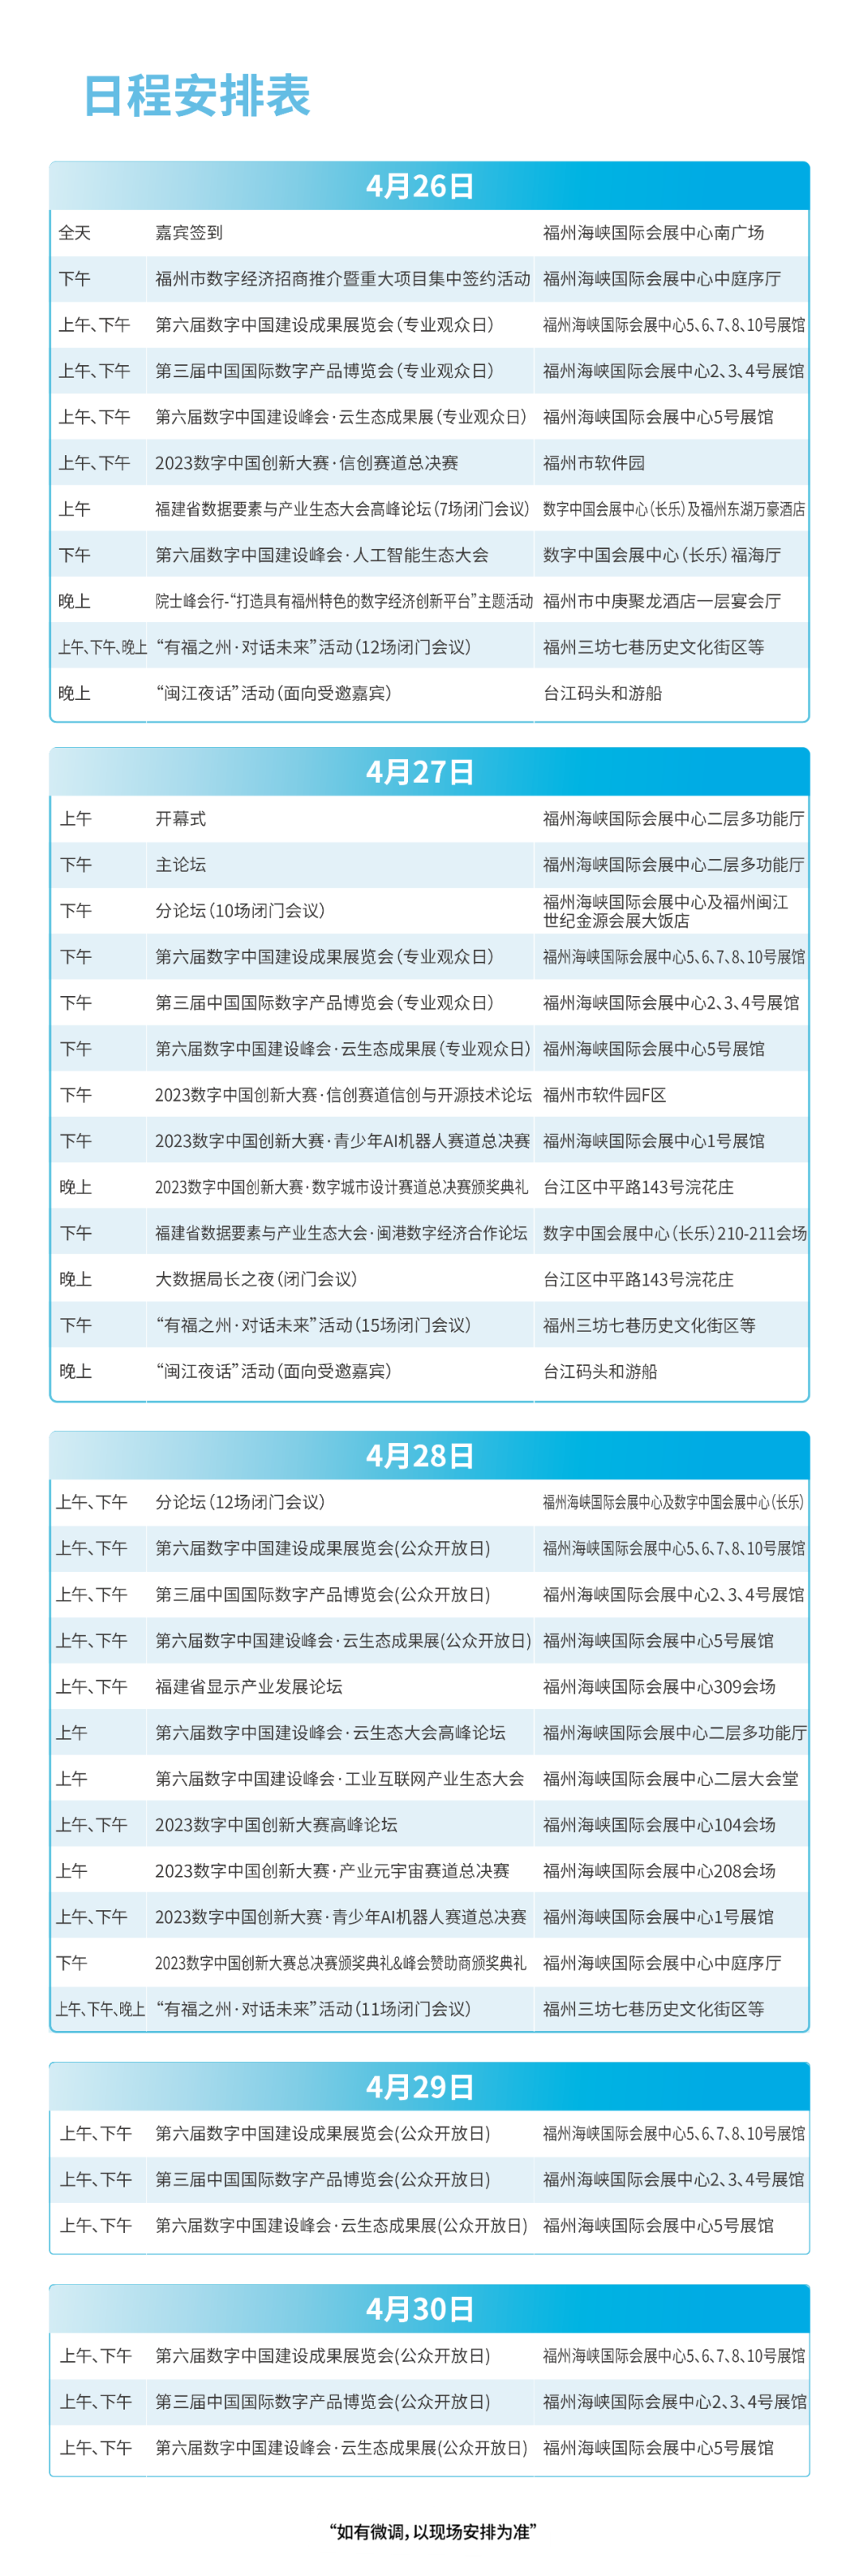 第六届数字中国建设峰会会议活动日程安排表出炉！